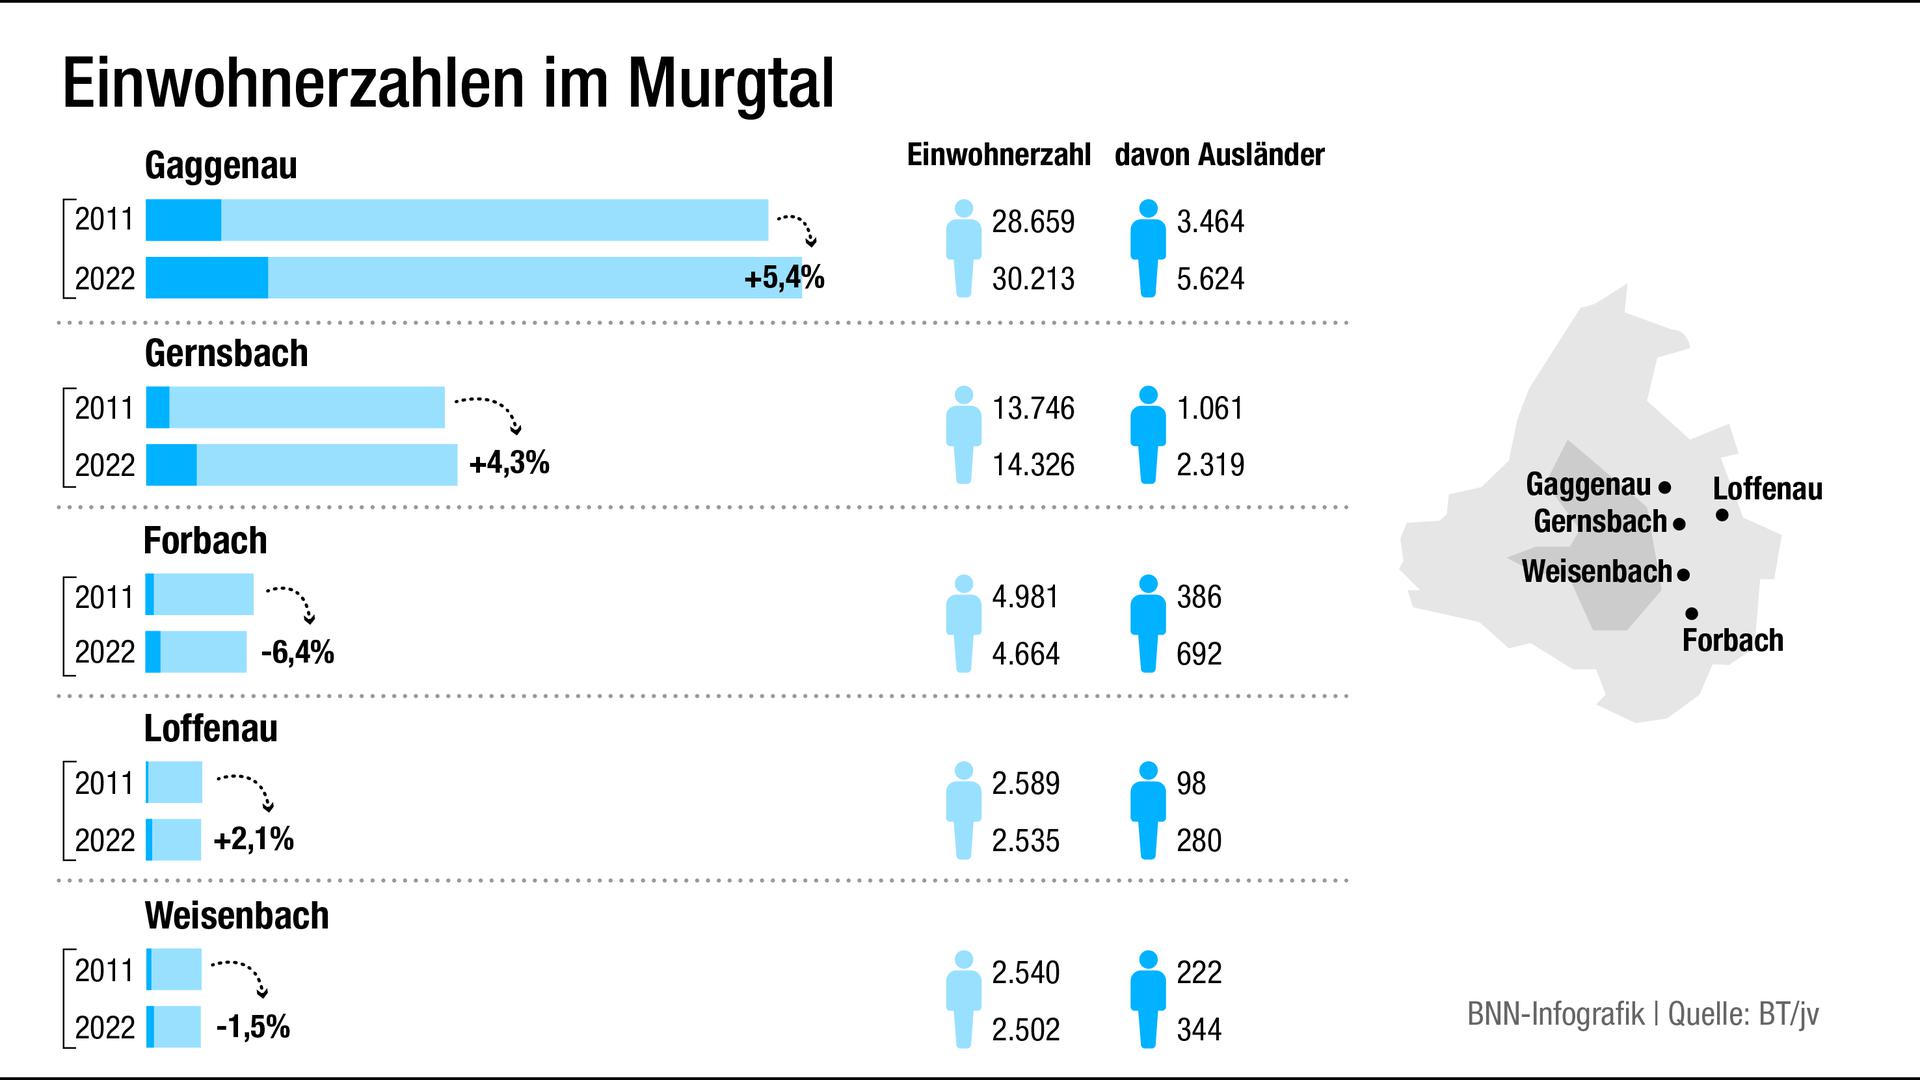 Einwohnerzahlen im Murgtal